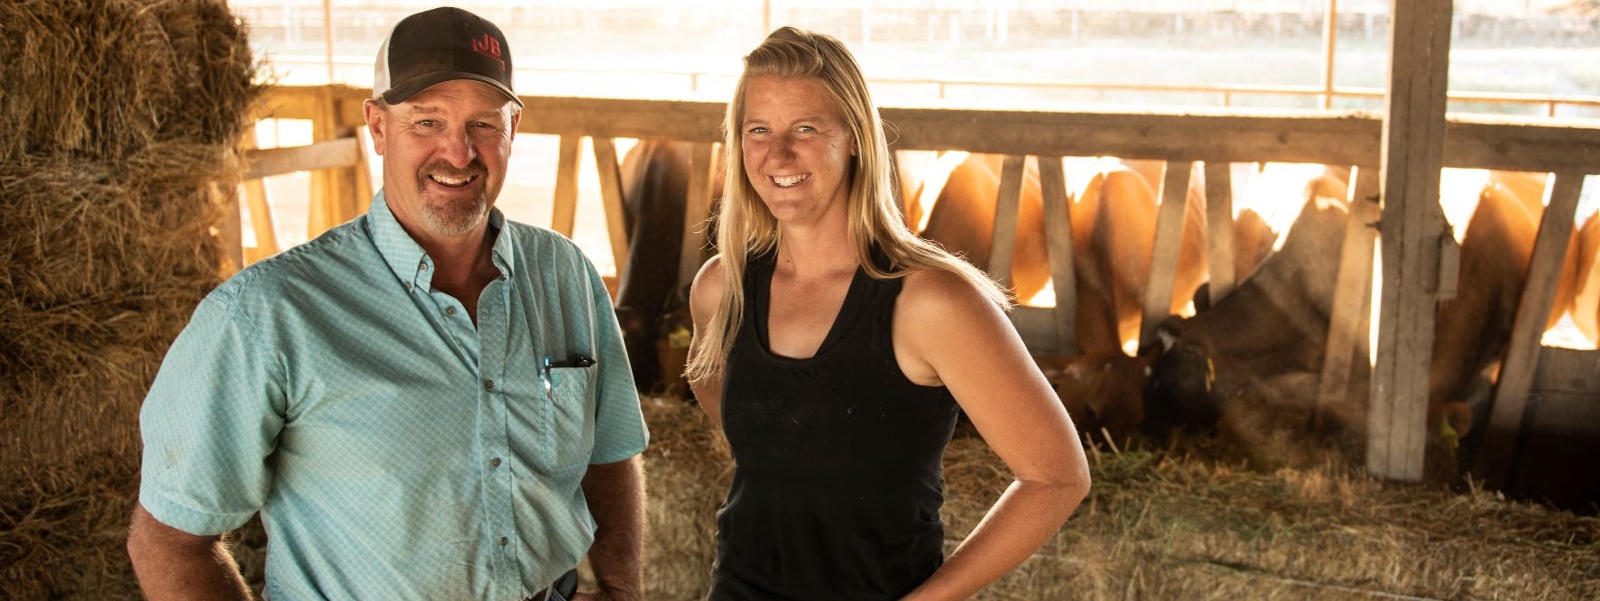 Sonoma County dairy farm family wins Leopold award